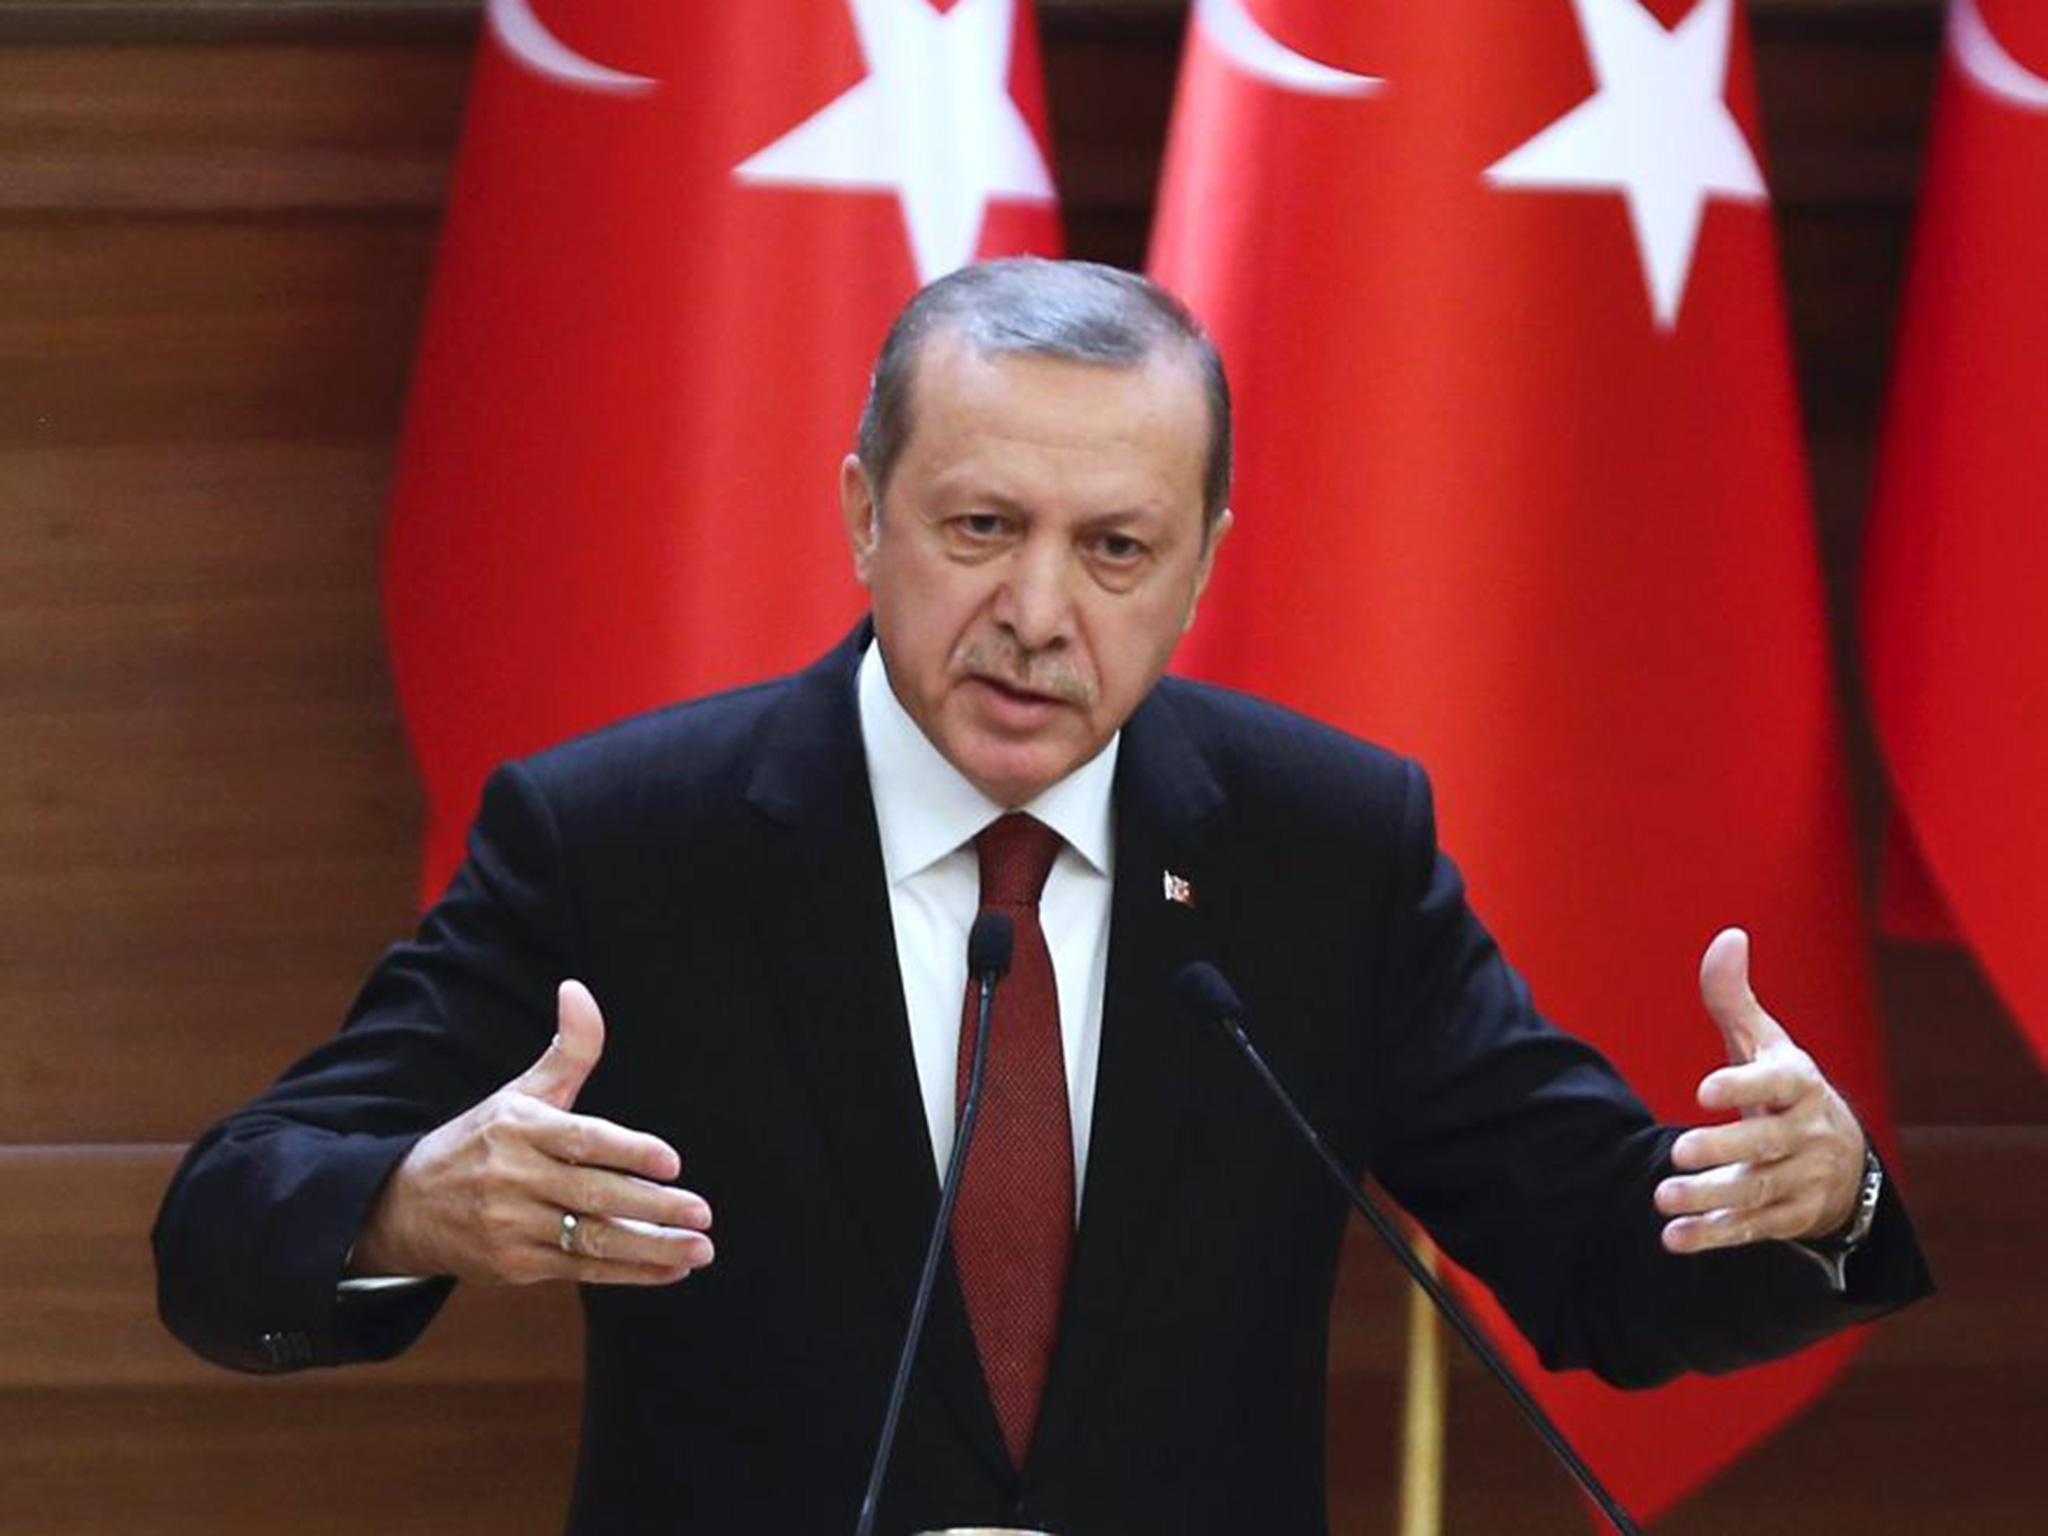   تركيا تستدعي القائم بالأعمال احتجاجا على قرار البرلمان الهولندى بشأن "مذابح" الأرمن